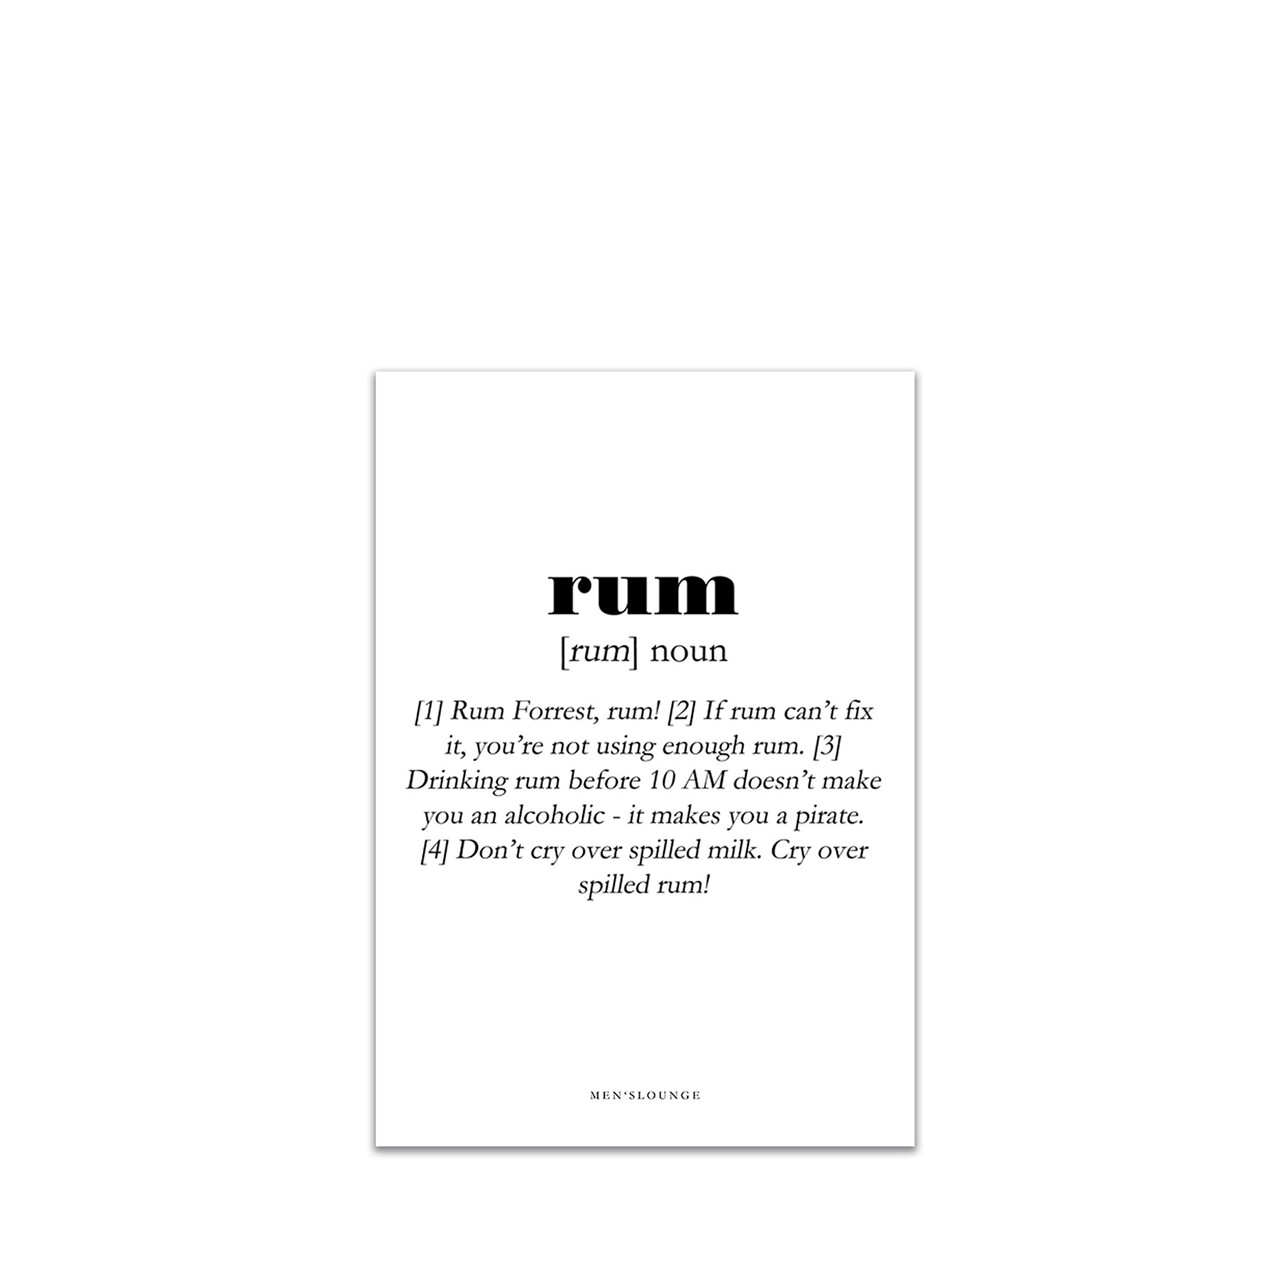 MEN’S LOUNGE Rum Definition A5